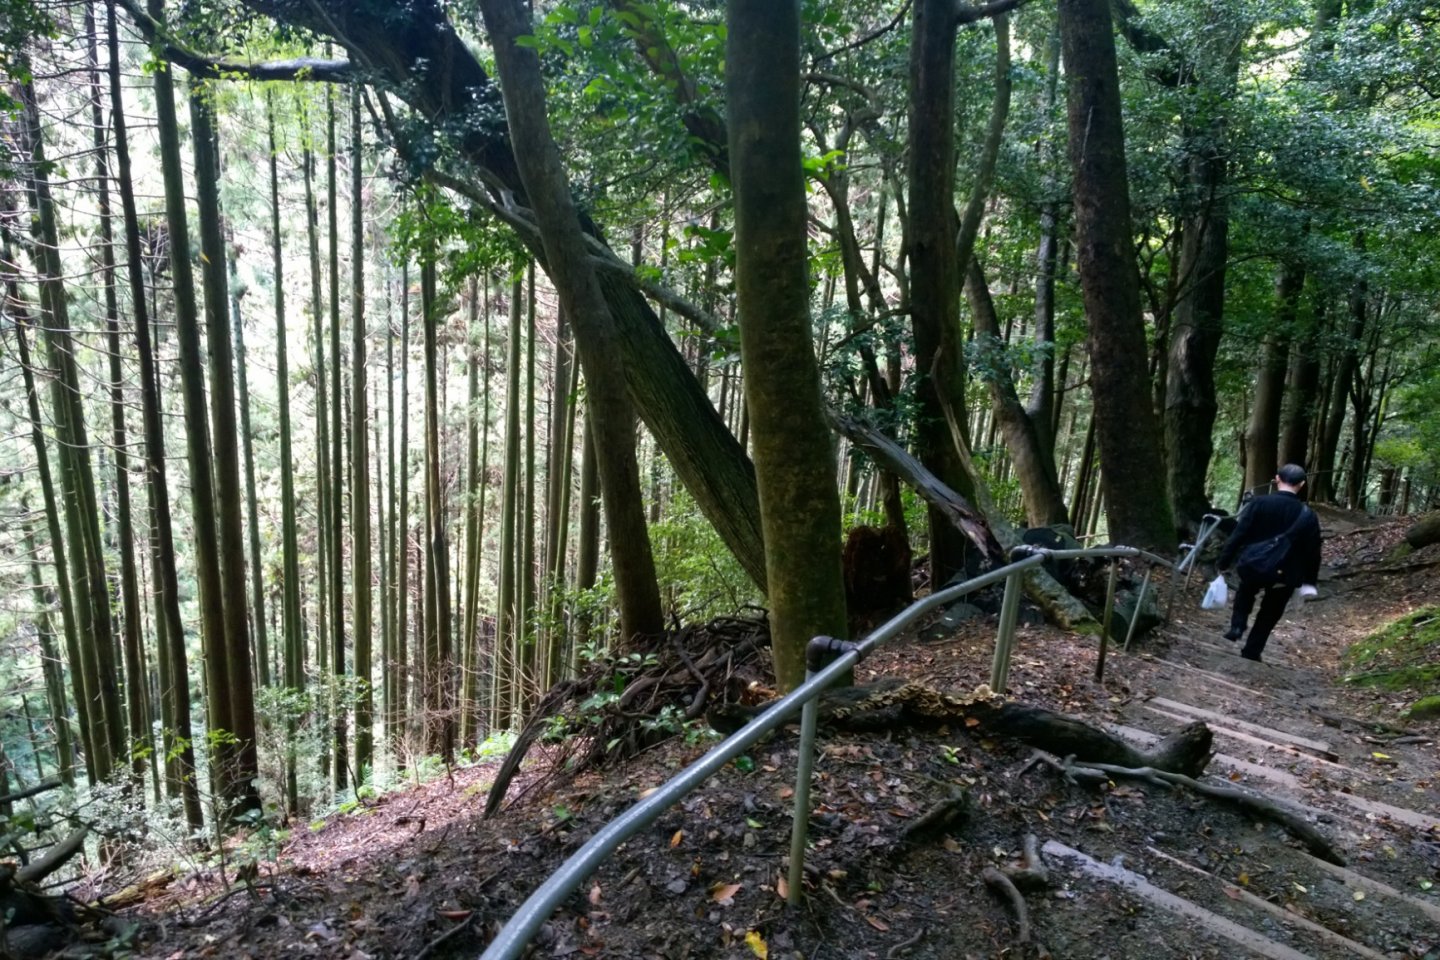 เส้นทางเดินป่าท่ามกลางธรรมชาติอันเขียวขจี บริเวณนี้เป็นเส้นทางที่ตัดผ่านป่าสนยืนต้นสูงสง่าอย่าสวยงาม